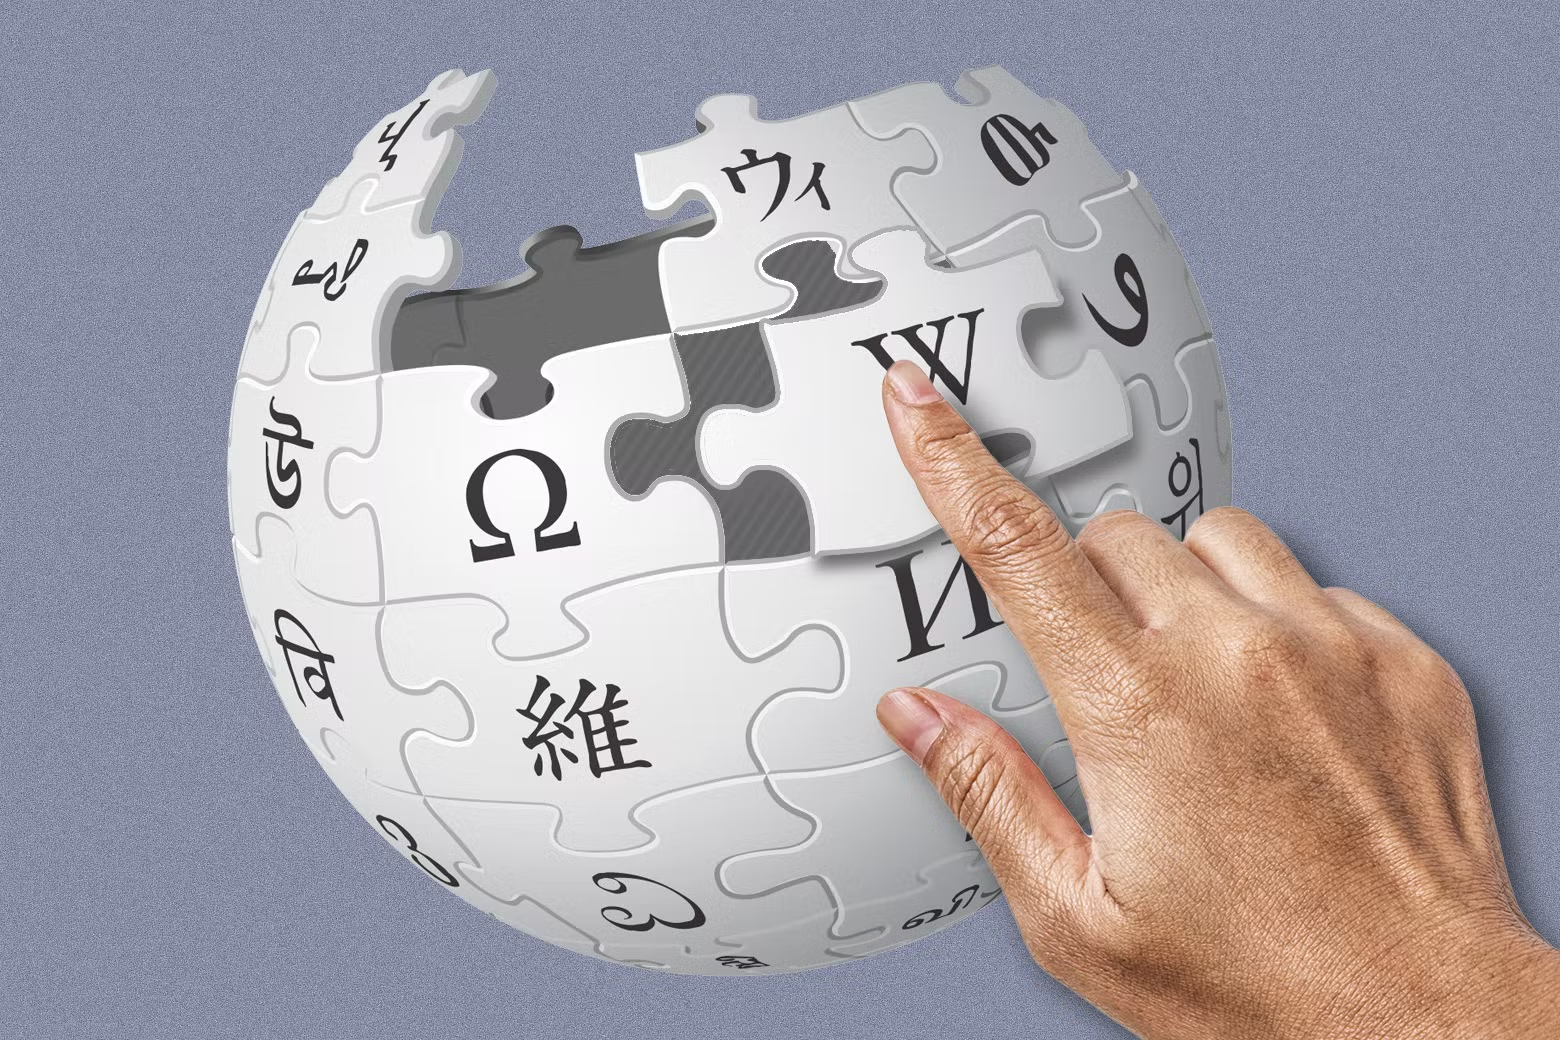 Википедия обновила дизайн впервые за 12 лет